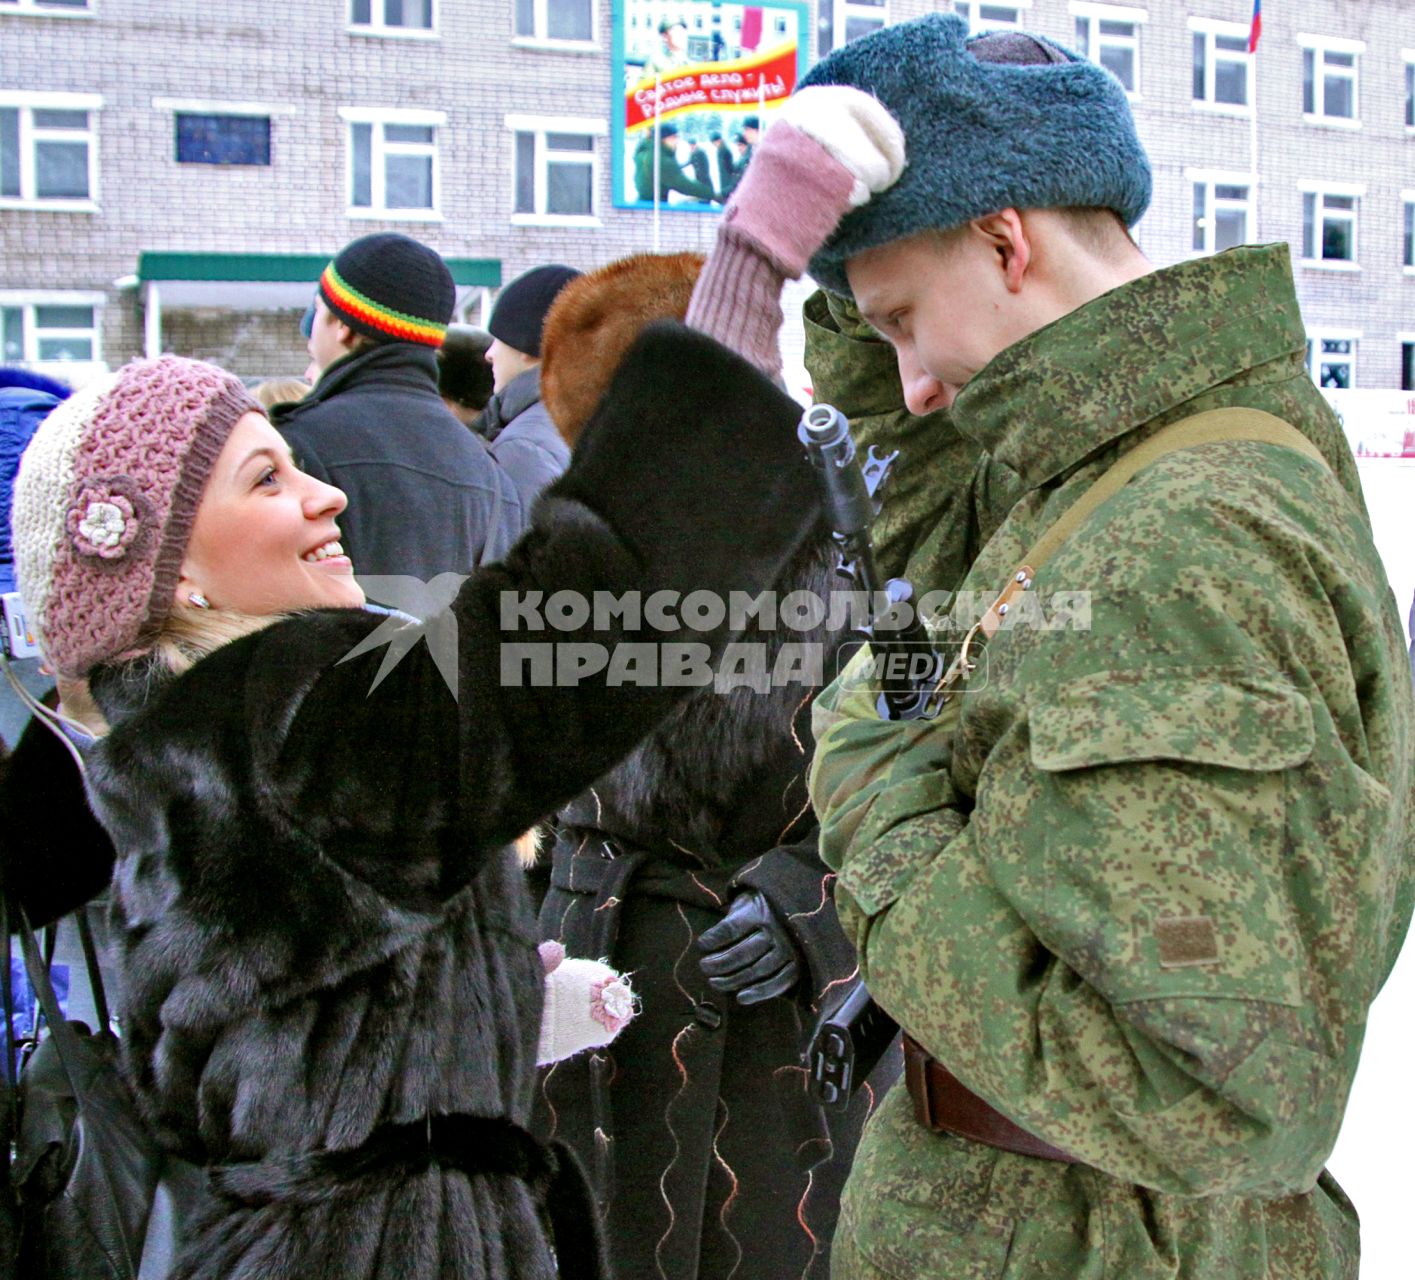 Девушка поправляет головной убор на солдате.